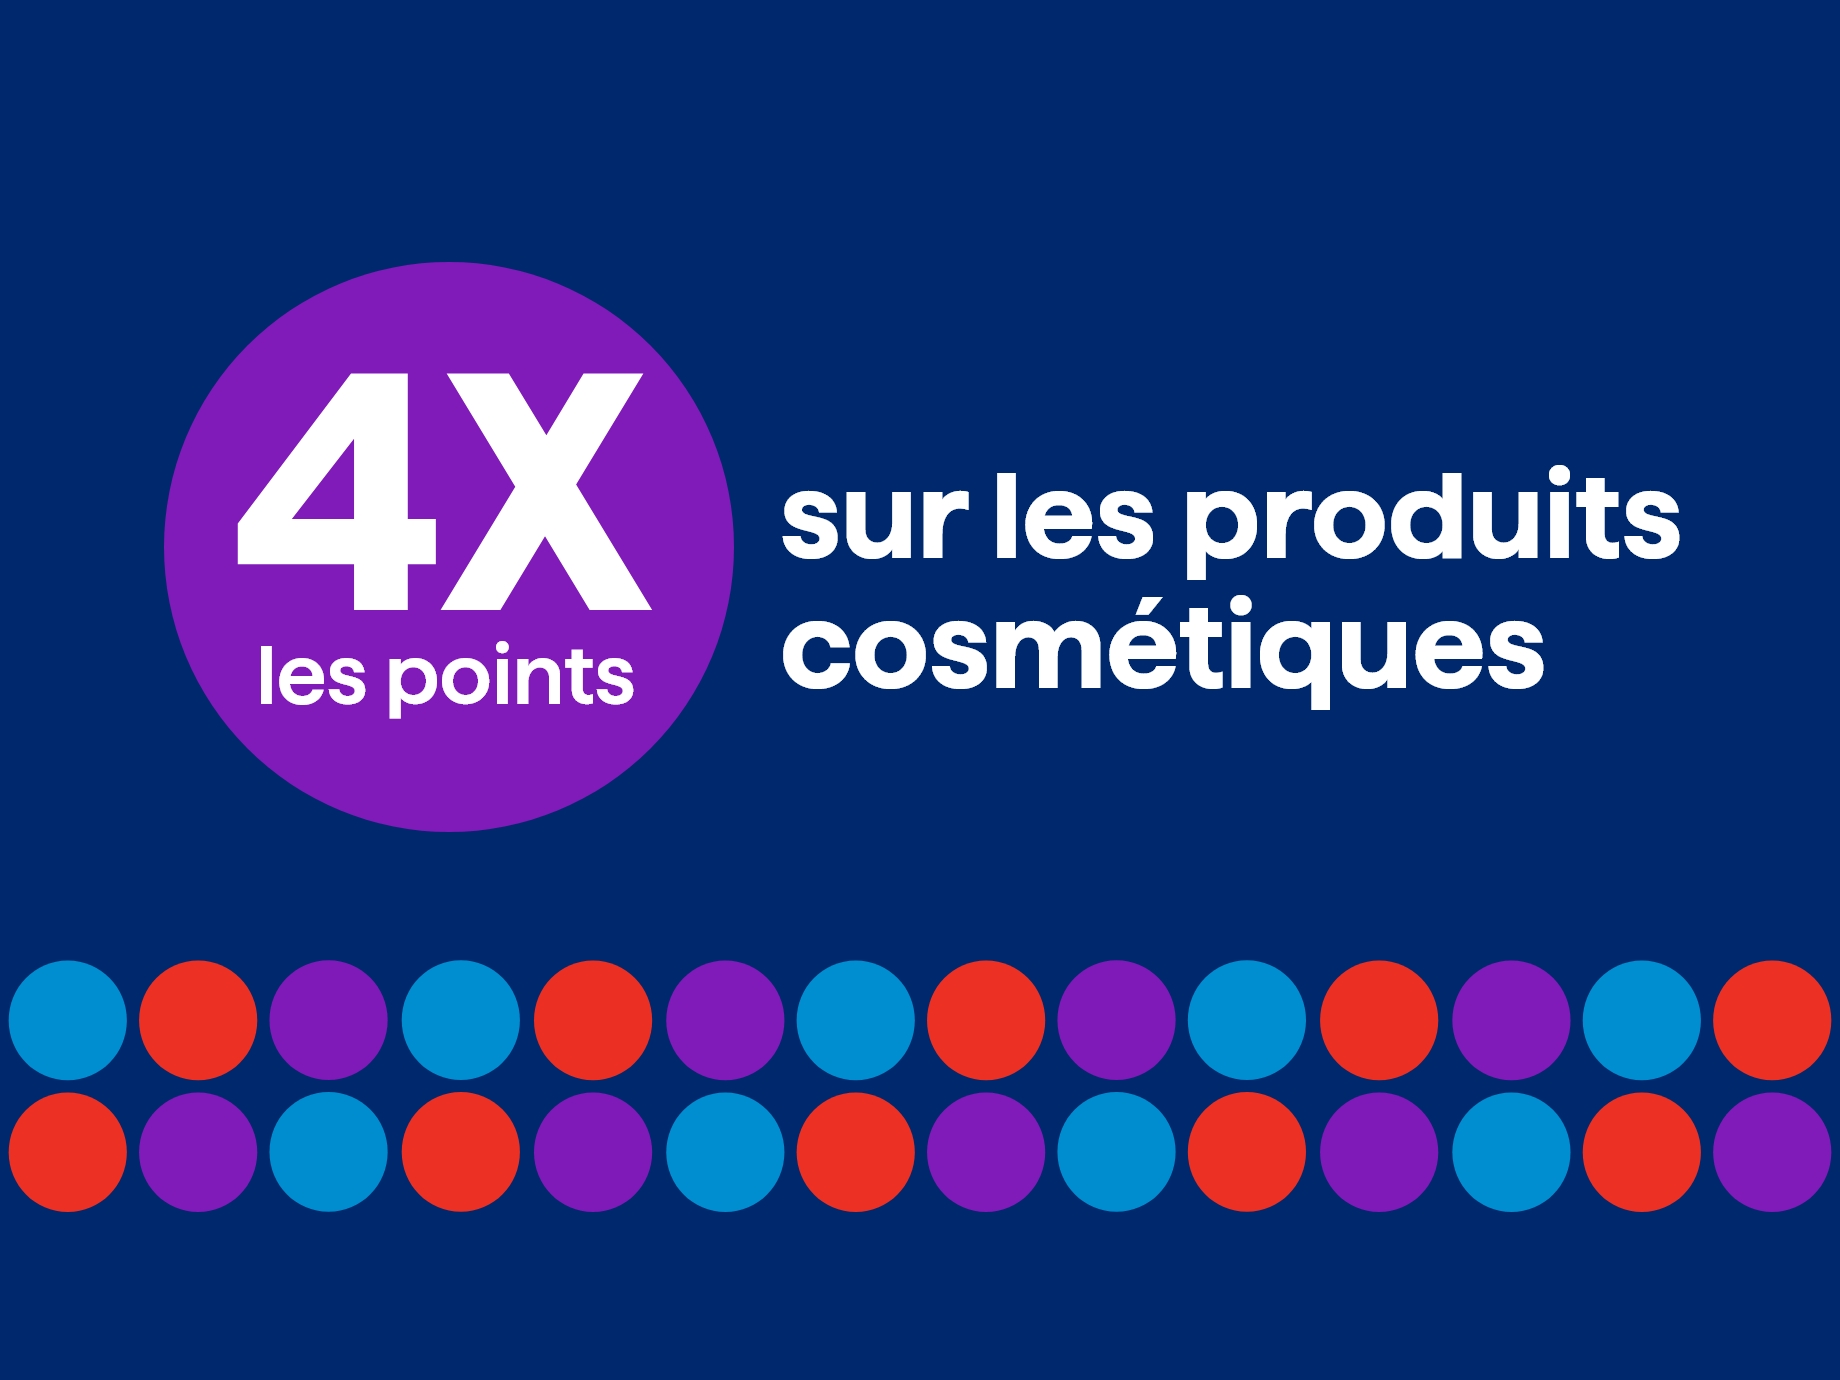 4x les points à l'achat de produits cosmétiques